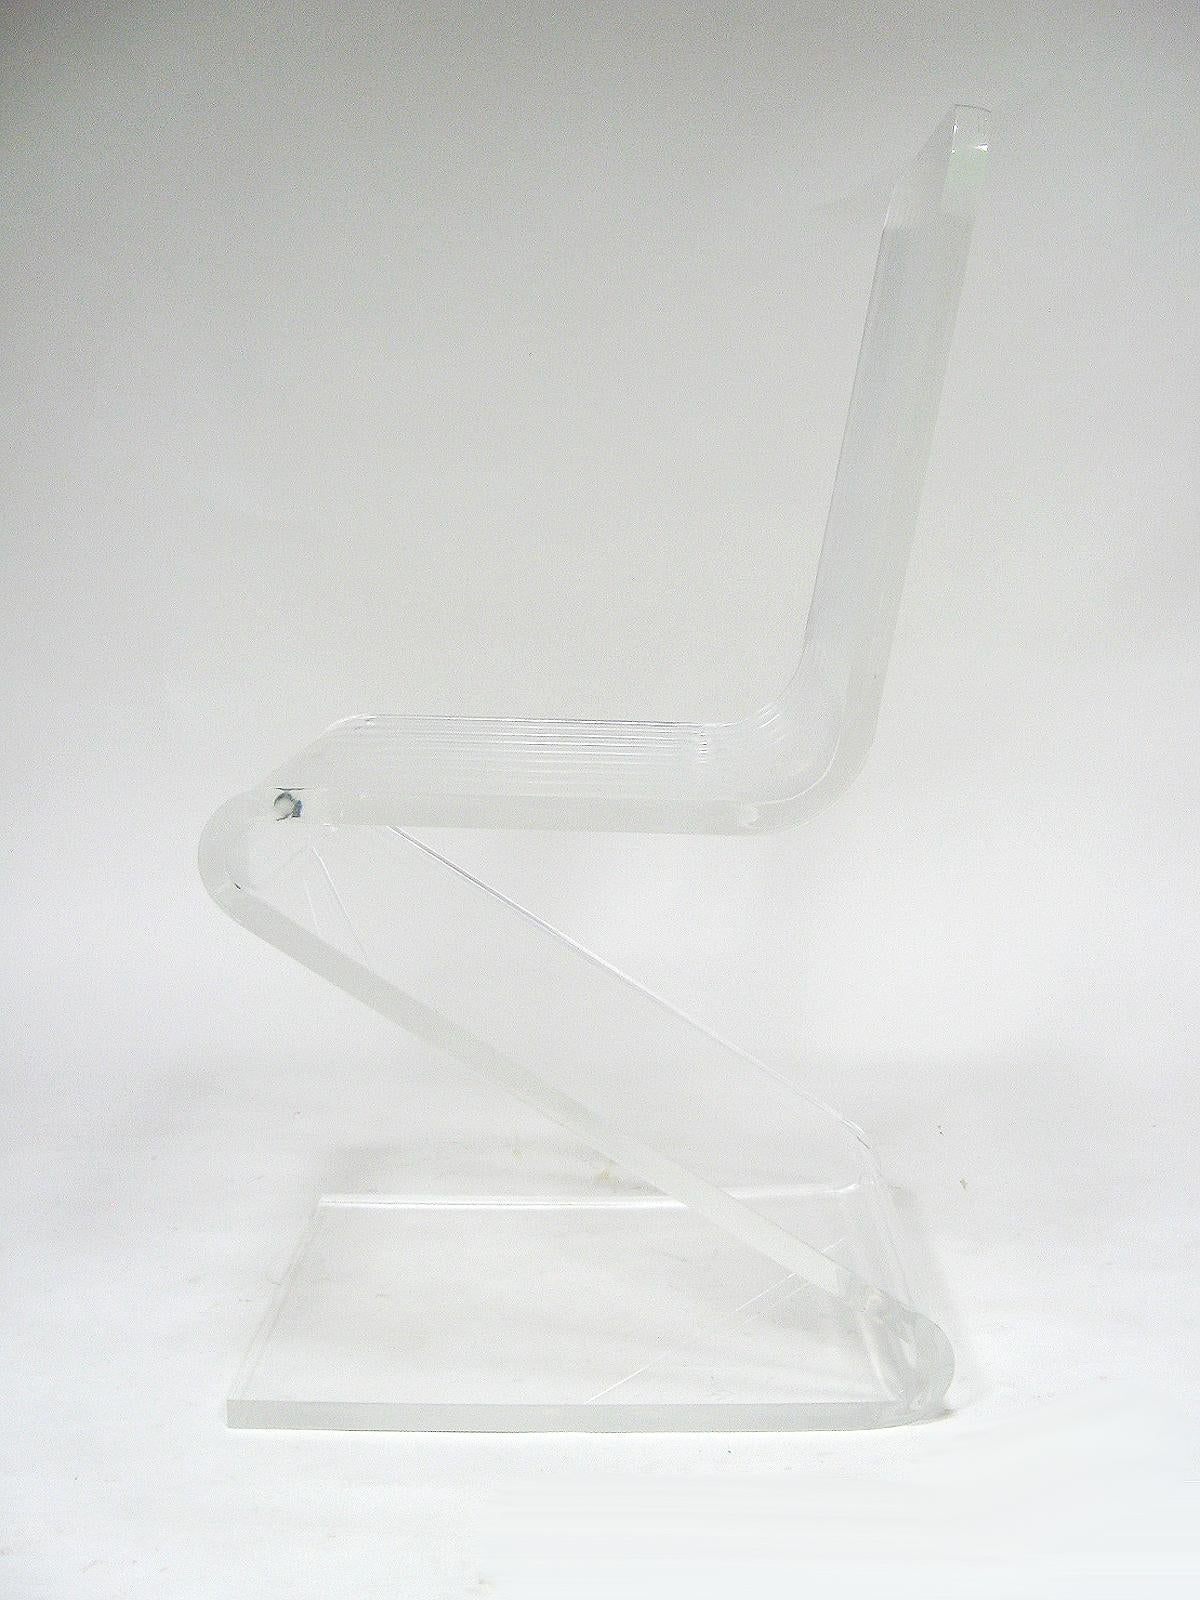 Cette chaise Z classique en lucite est une excellente pièce d'appoint en très bon état d'origine. Sa qualité transparente et sa forme minimale lui permettent de s'intégrer dans n'importe quel intérieur.